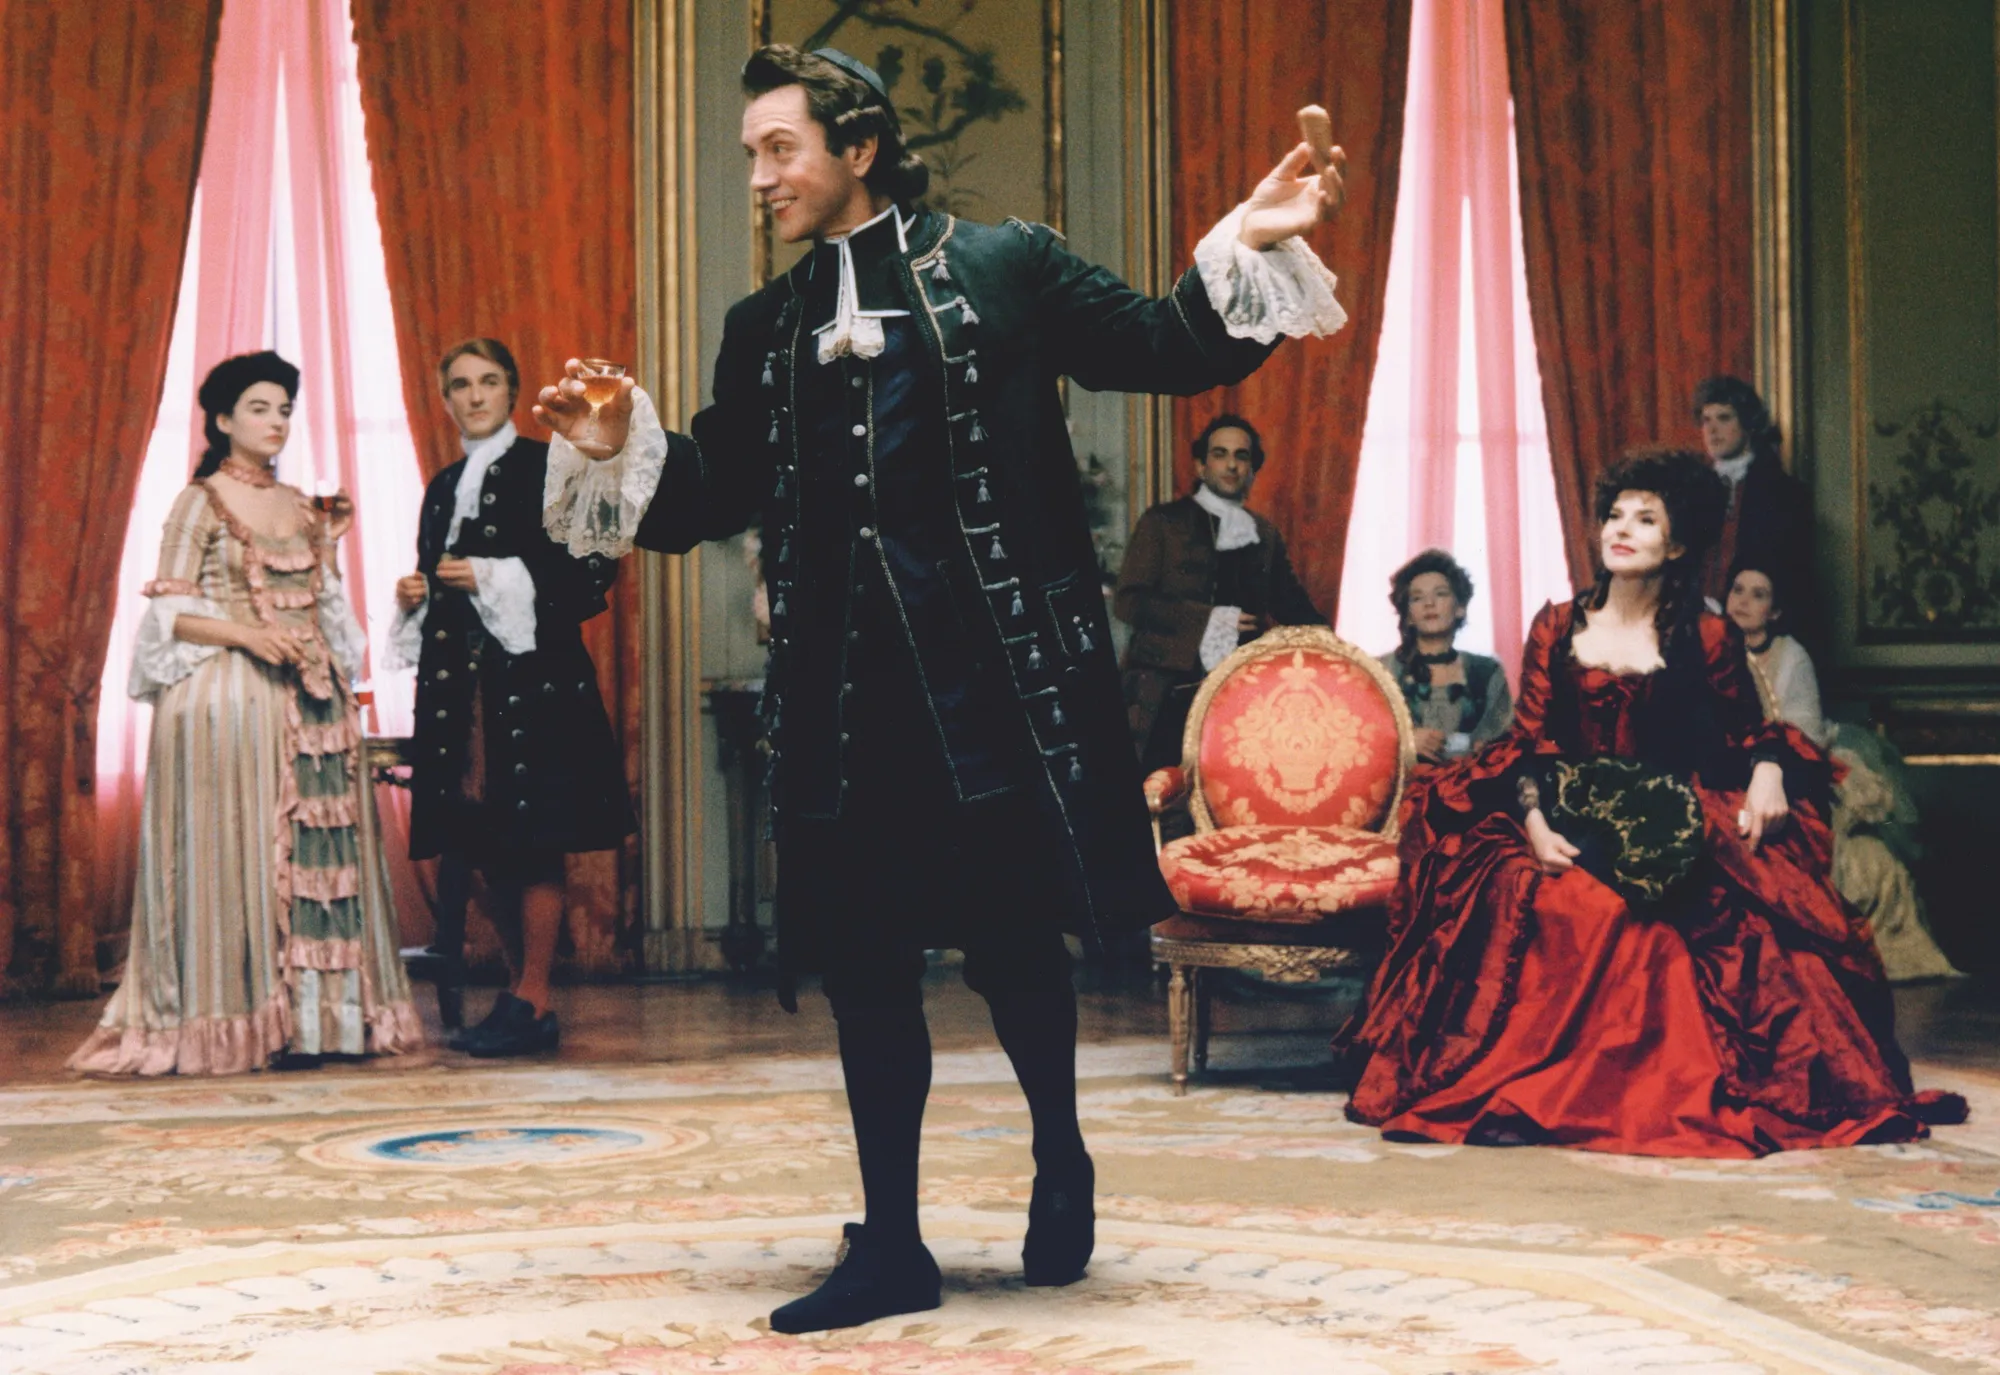 Photogramme du film Ridicule de Patrice Leconte, 1996. L'abbé de Villecourt (Bernard Giraudeau) joue au bout-rimé, jeu consistant à improviser des vers à partir de rimes imposées.